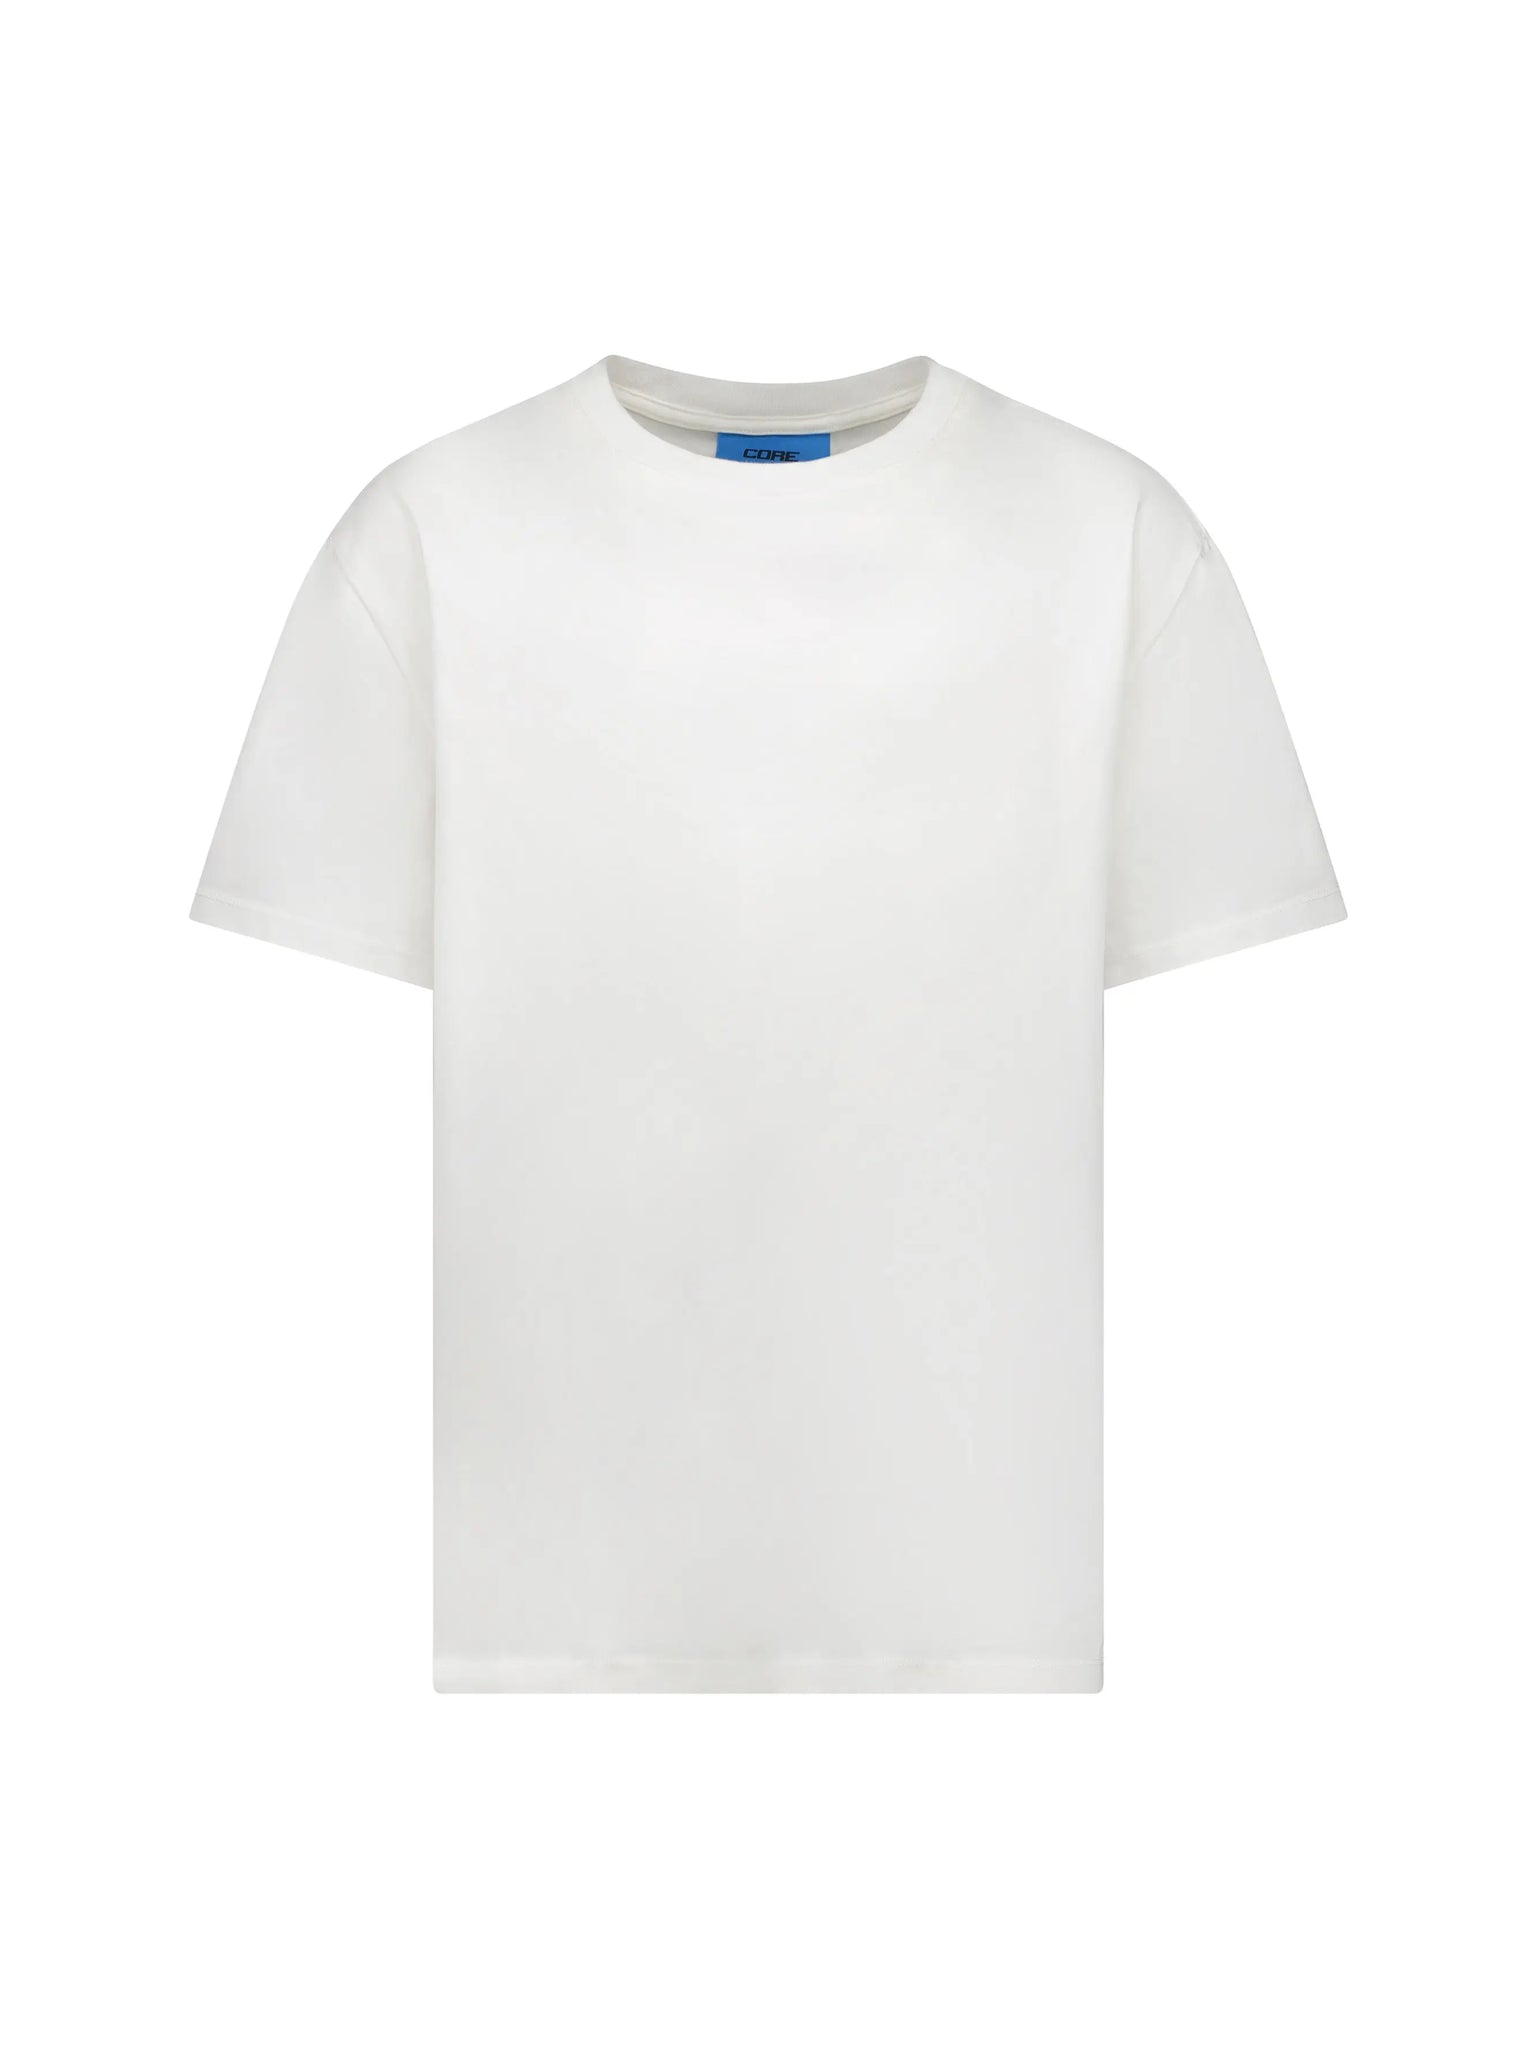 CORE Essential T-Shirt Arctic in Melbourne, Australia - Prior